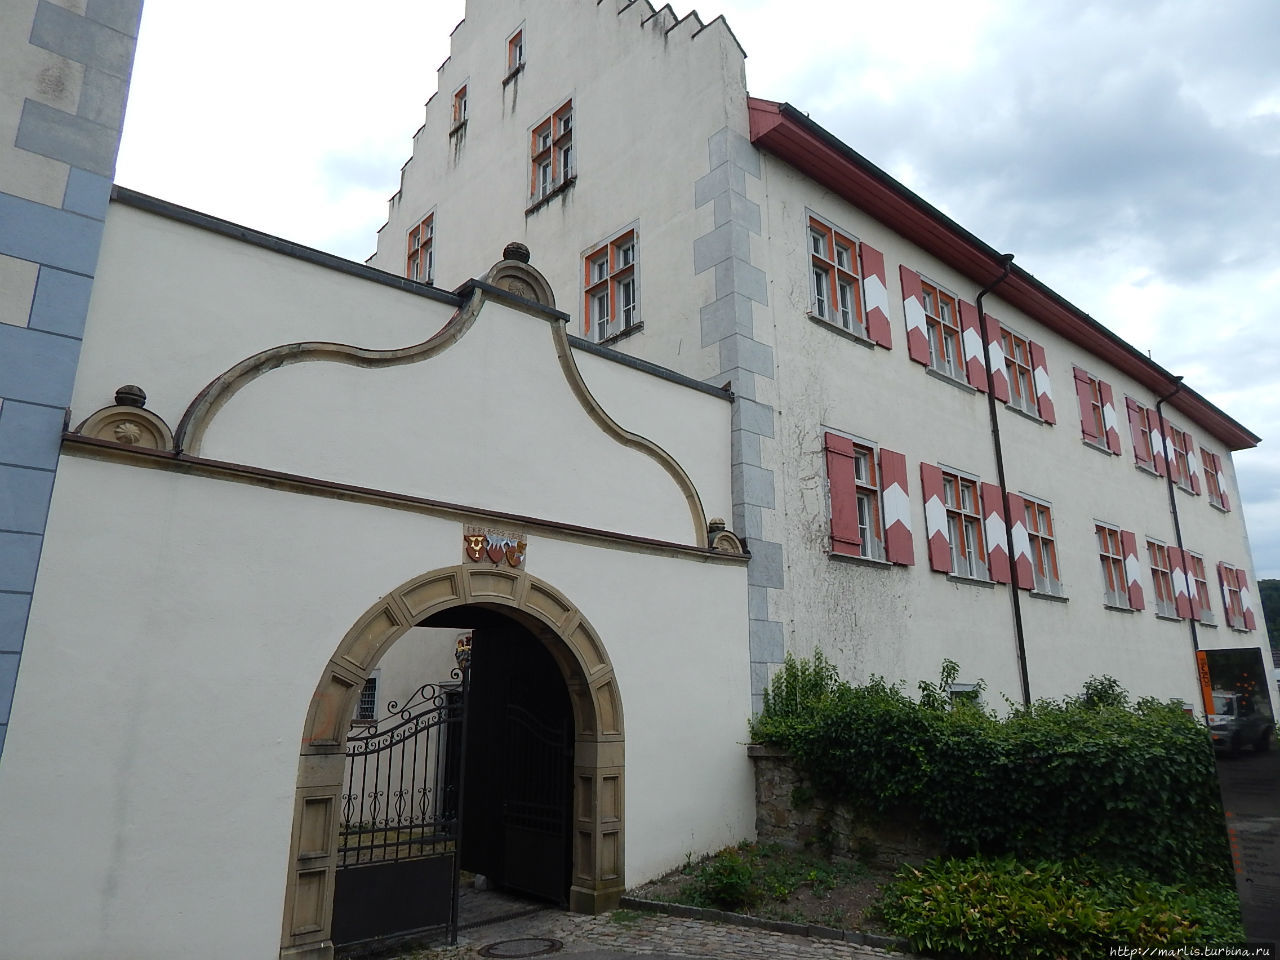 Тингенский замок, где сейчас находится налоговая Вальдсхут-Тинген, Германия